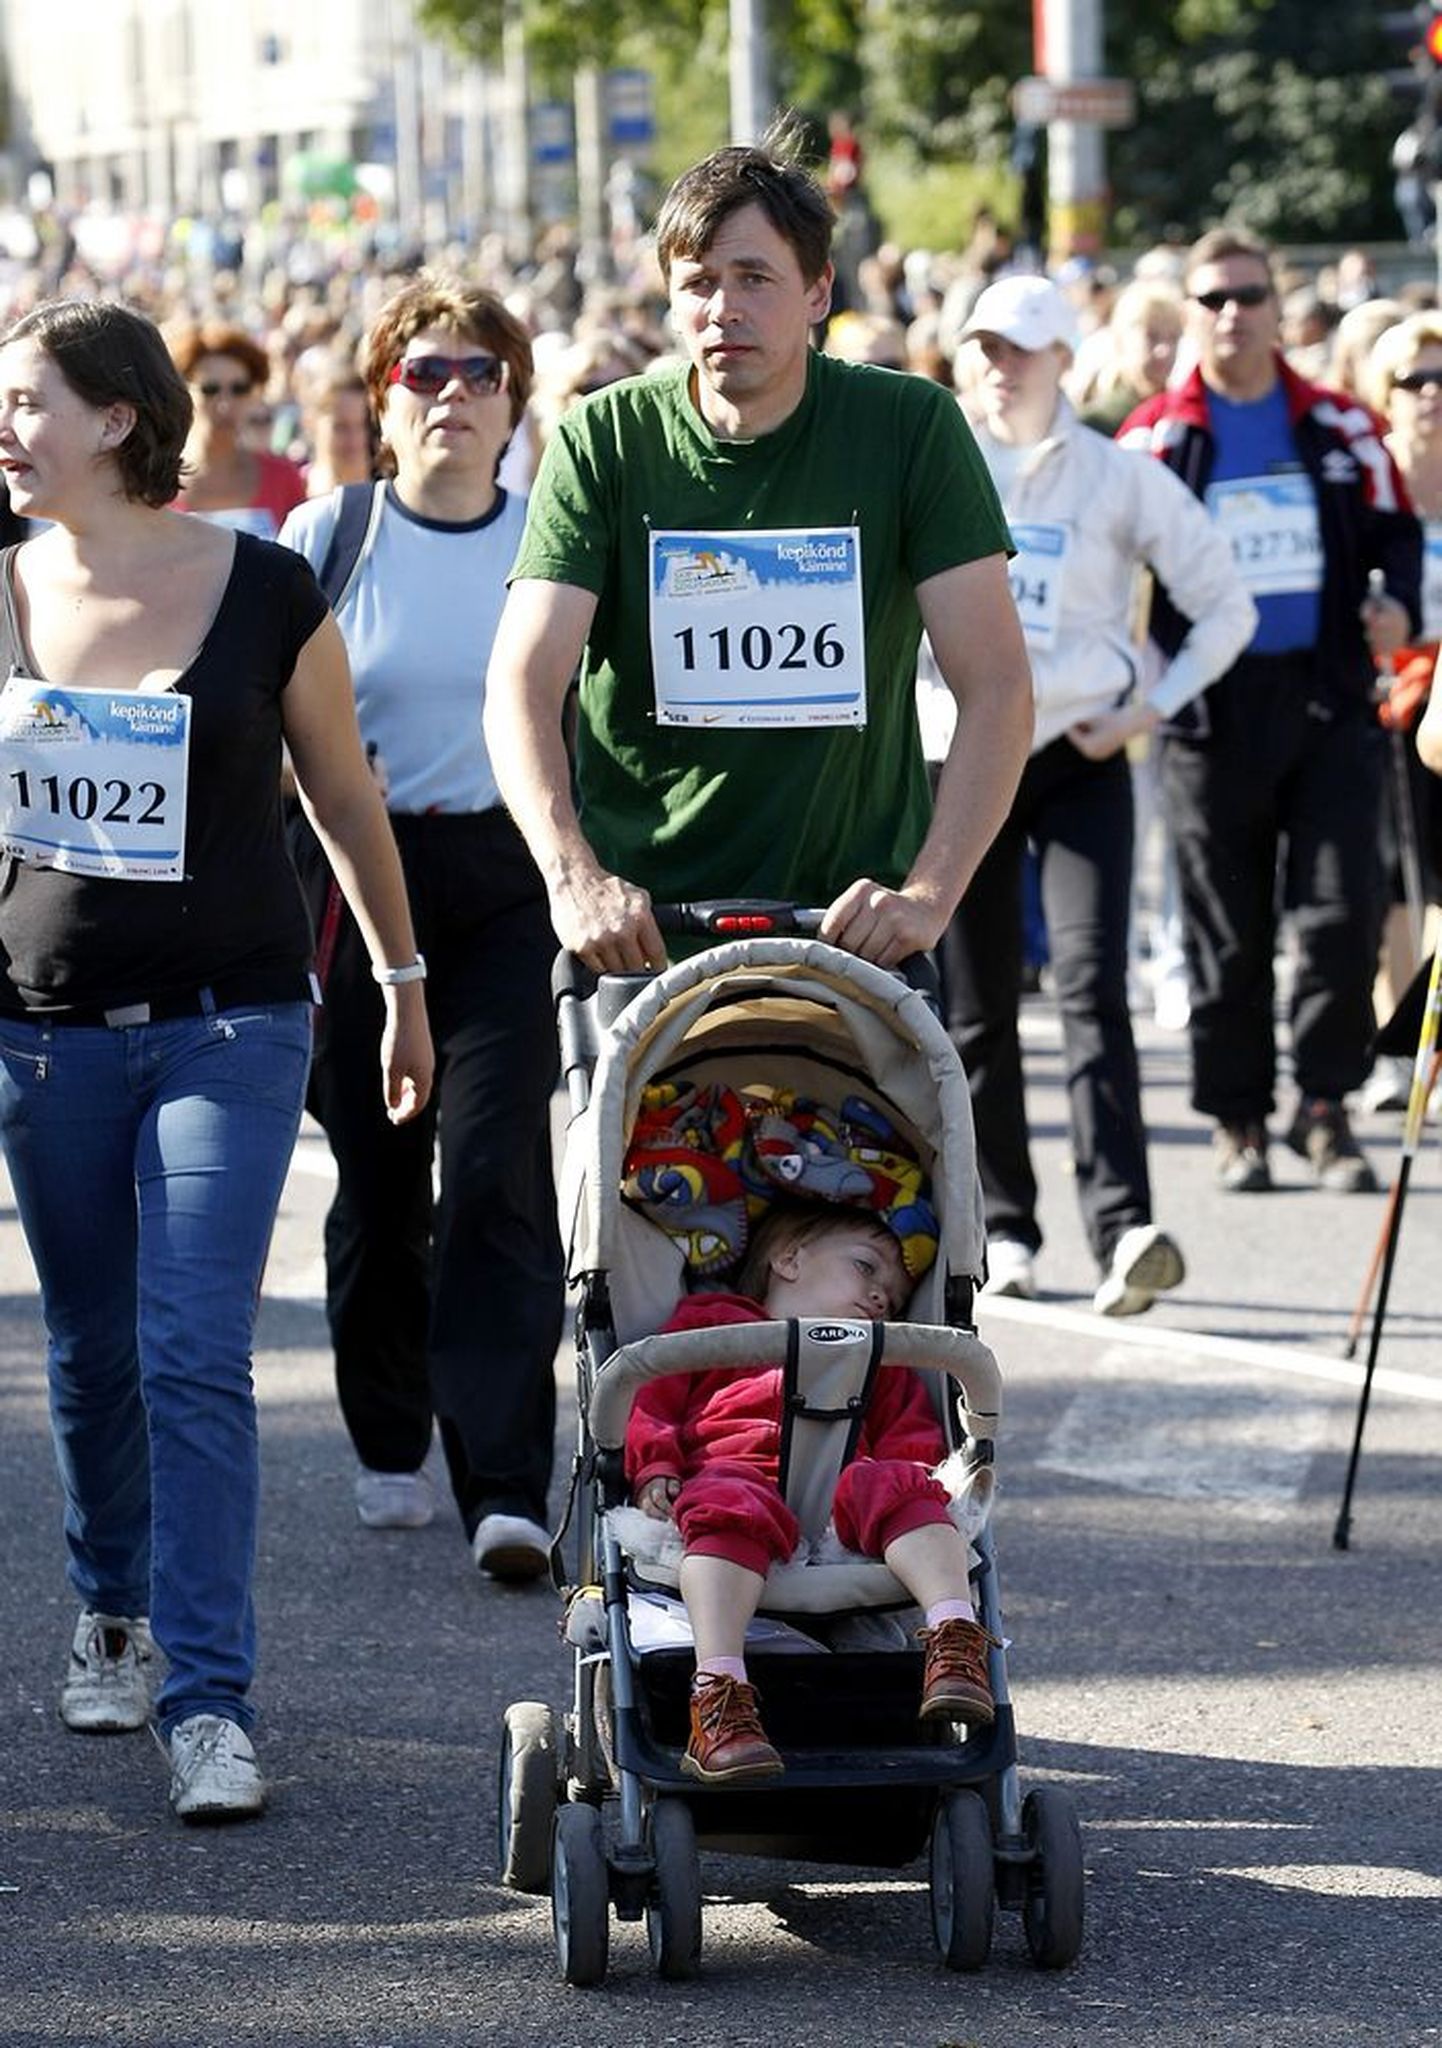 Tallinna sügisjooksul ja maratonil osaleb tänavu kokku üle 11 000 inimese.